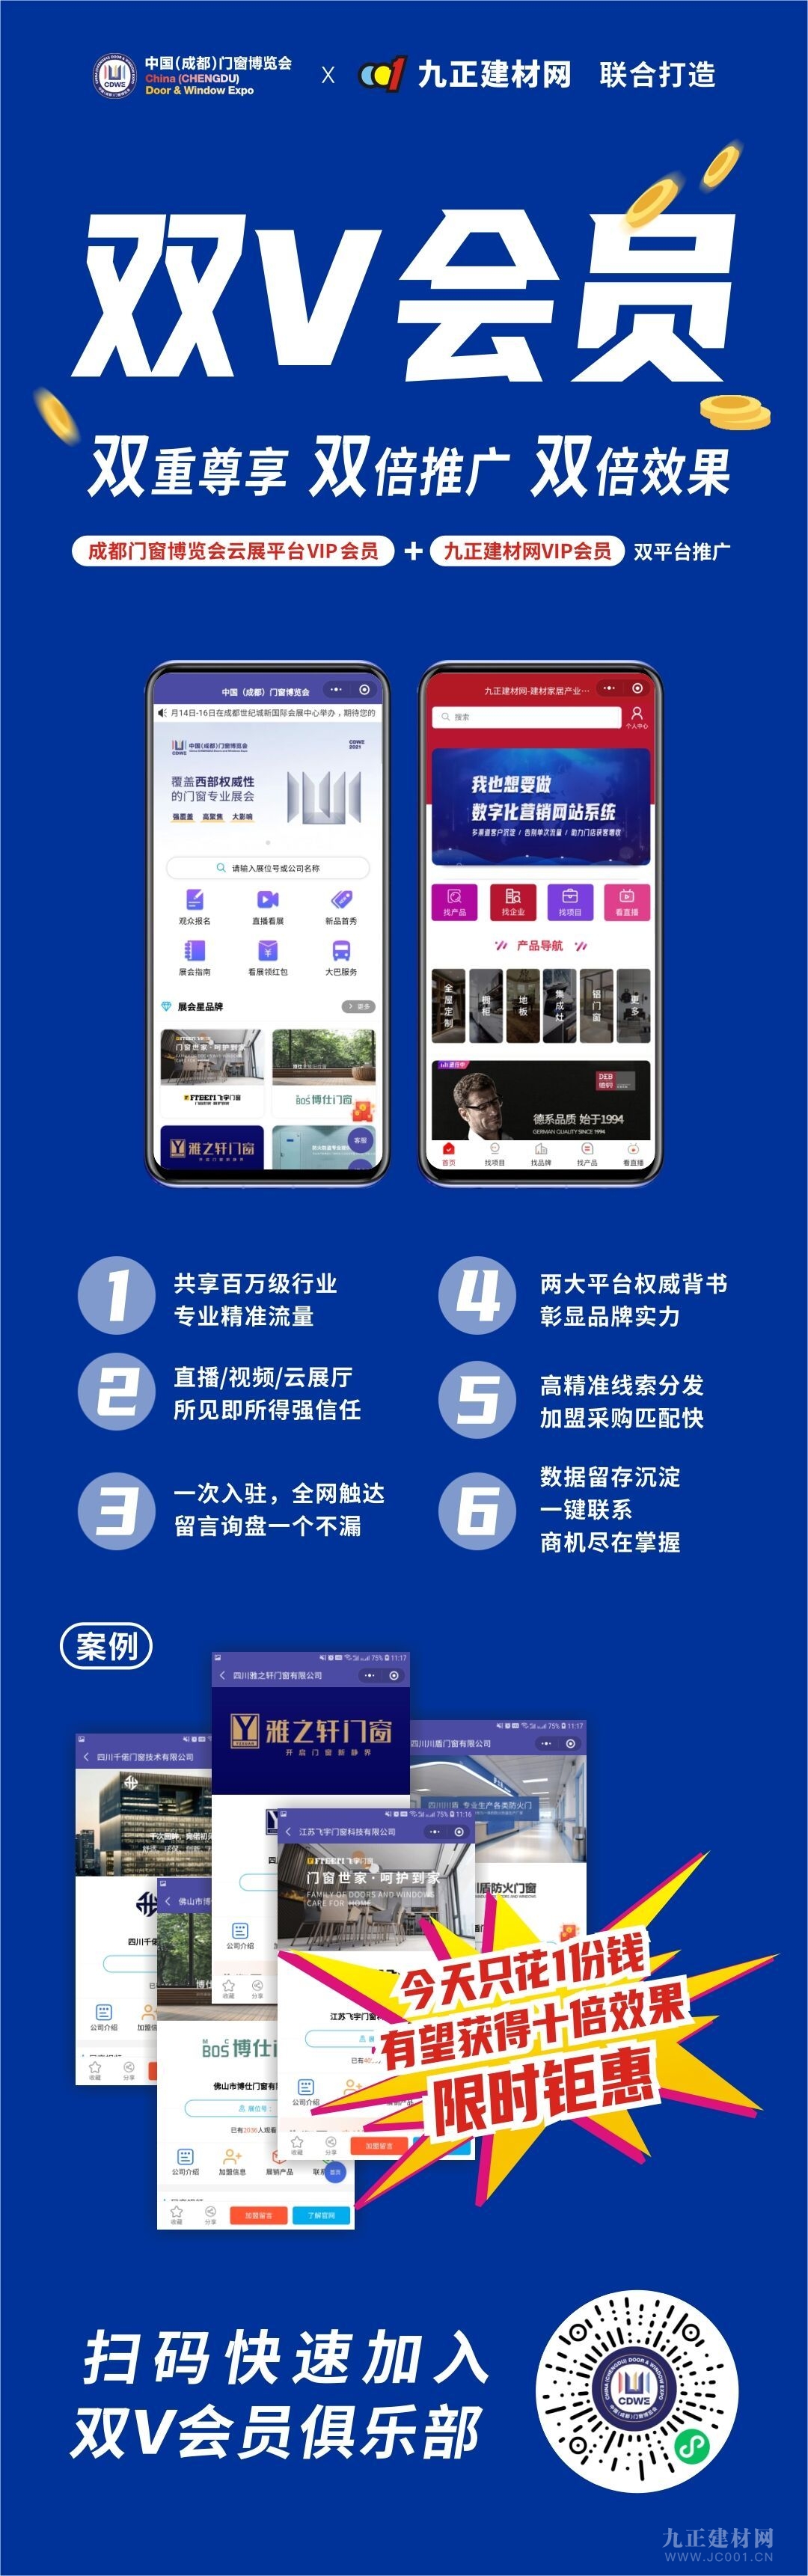  中国（成都）门窗展览会官方云展平台“门窗大视界”首轮推出“门窗群星汇”